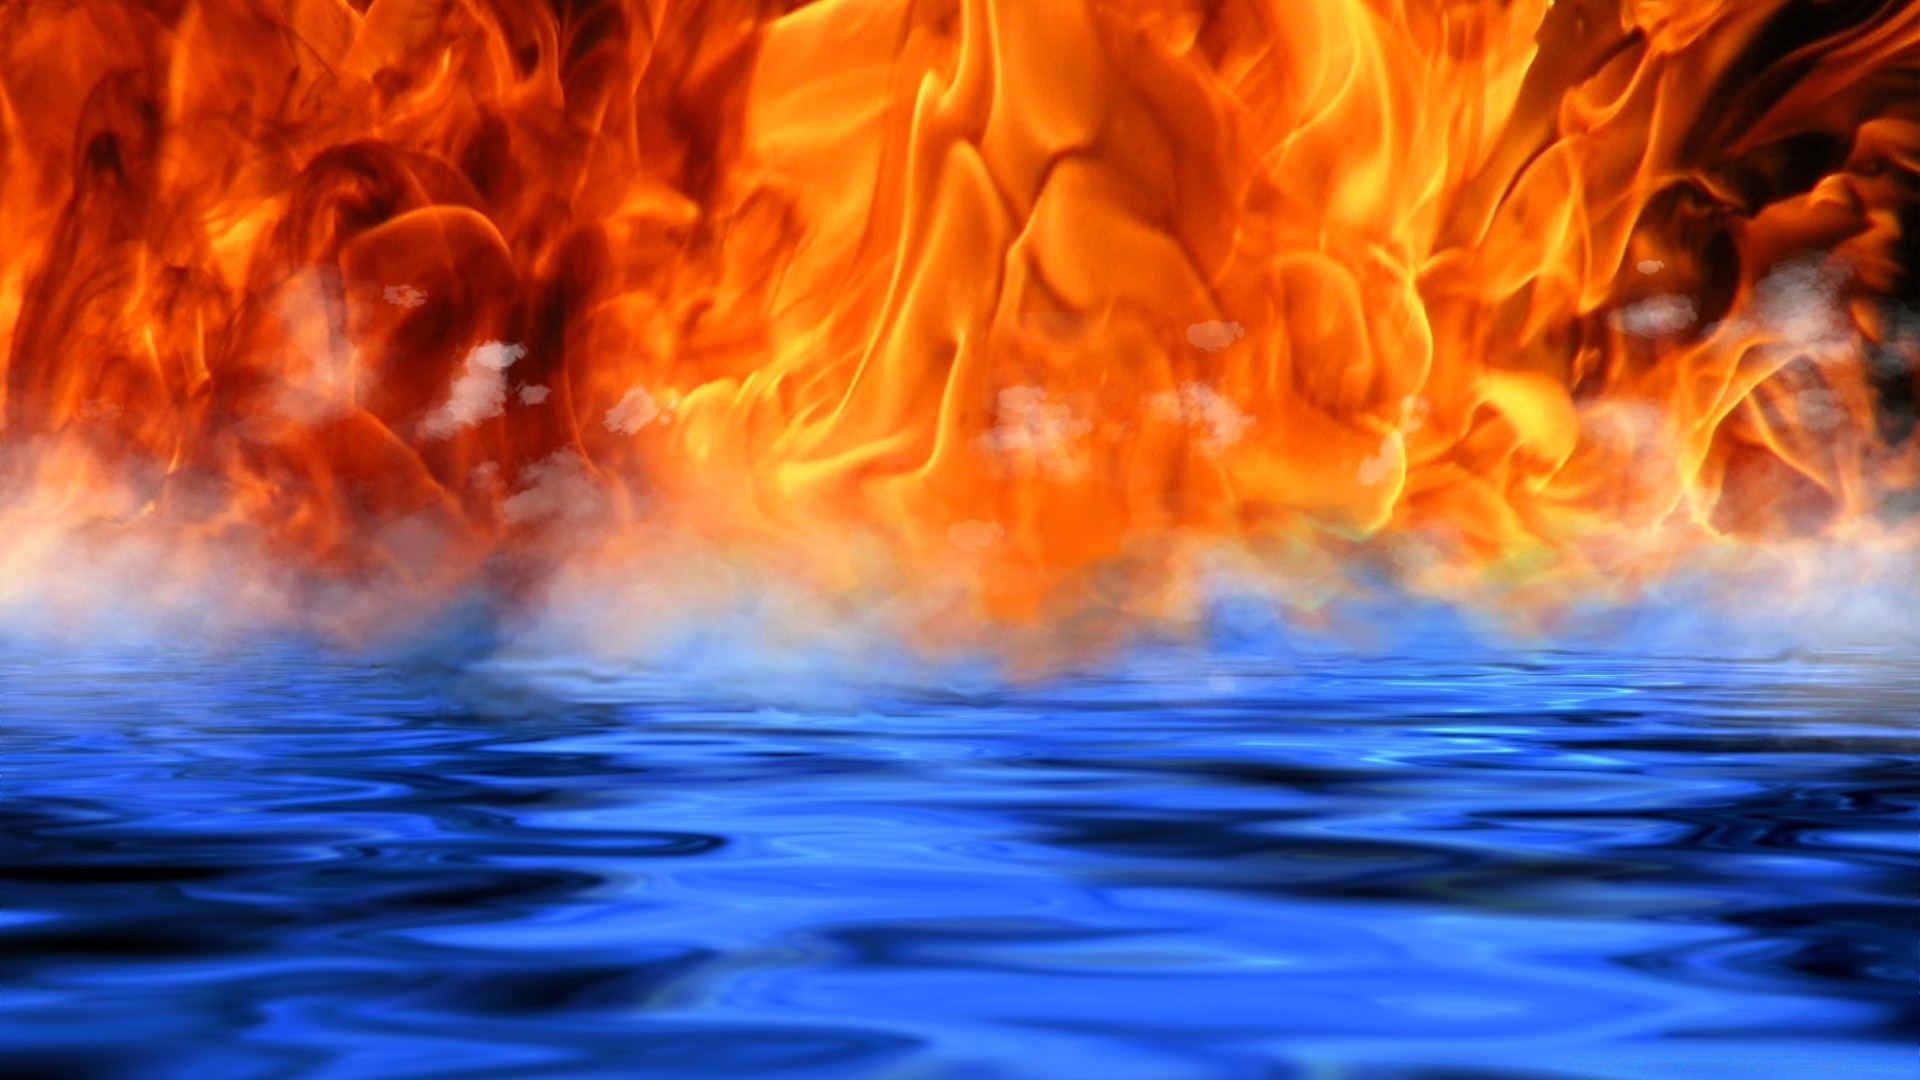 огонь пламя горячая тепло костер инферно пожар сжечь тепло костра блейз легковоспламеняющиеся сожгли опасность топлива яркий дым камин